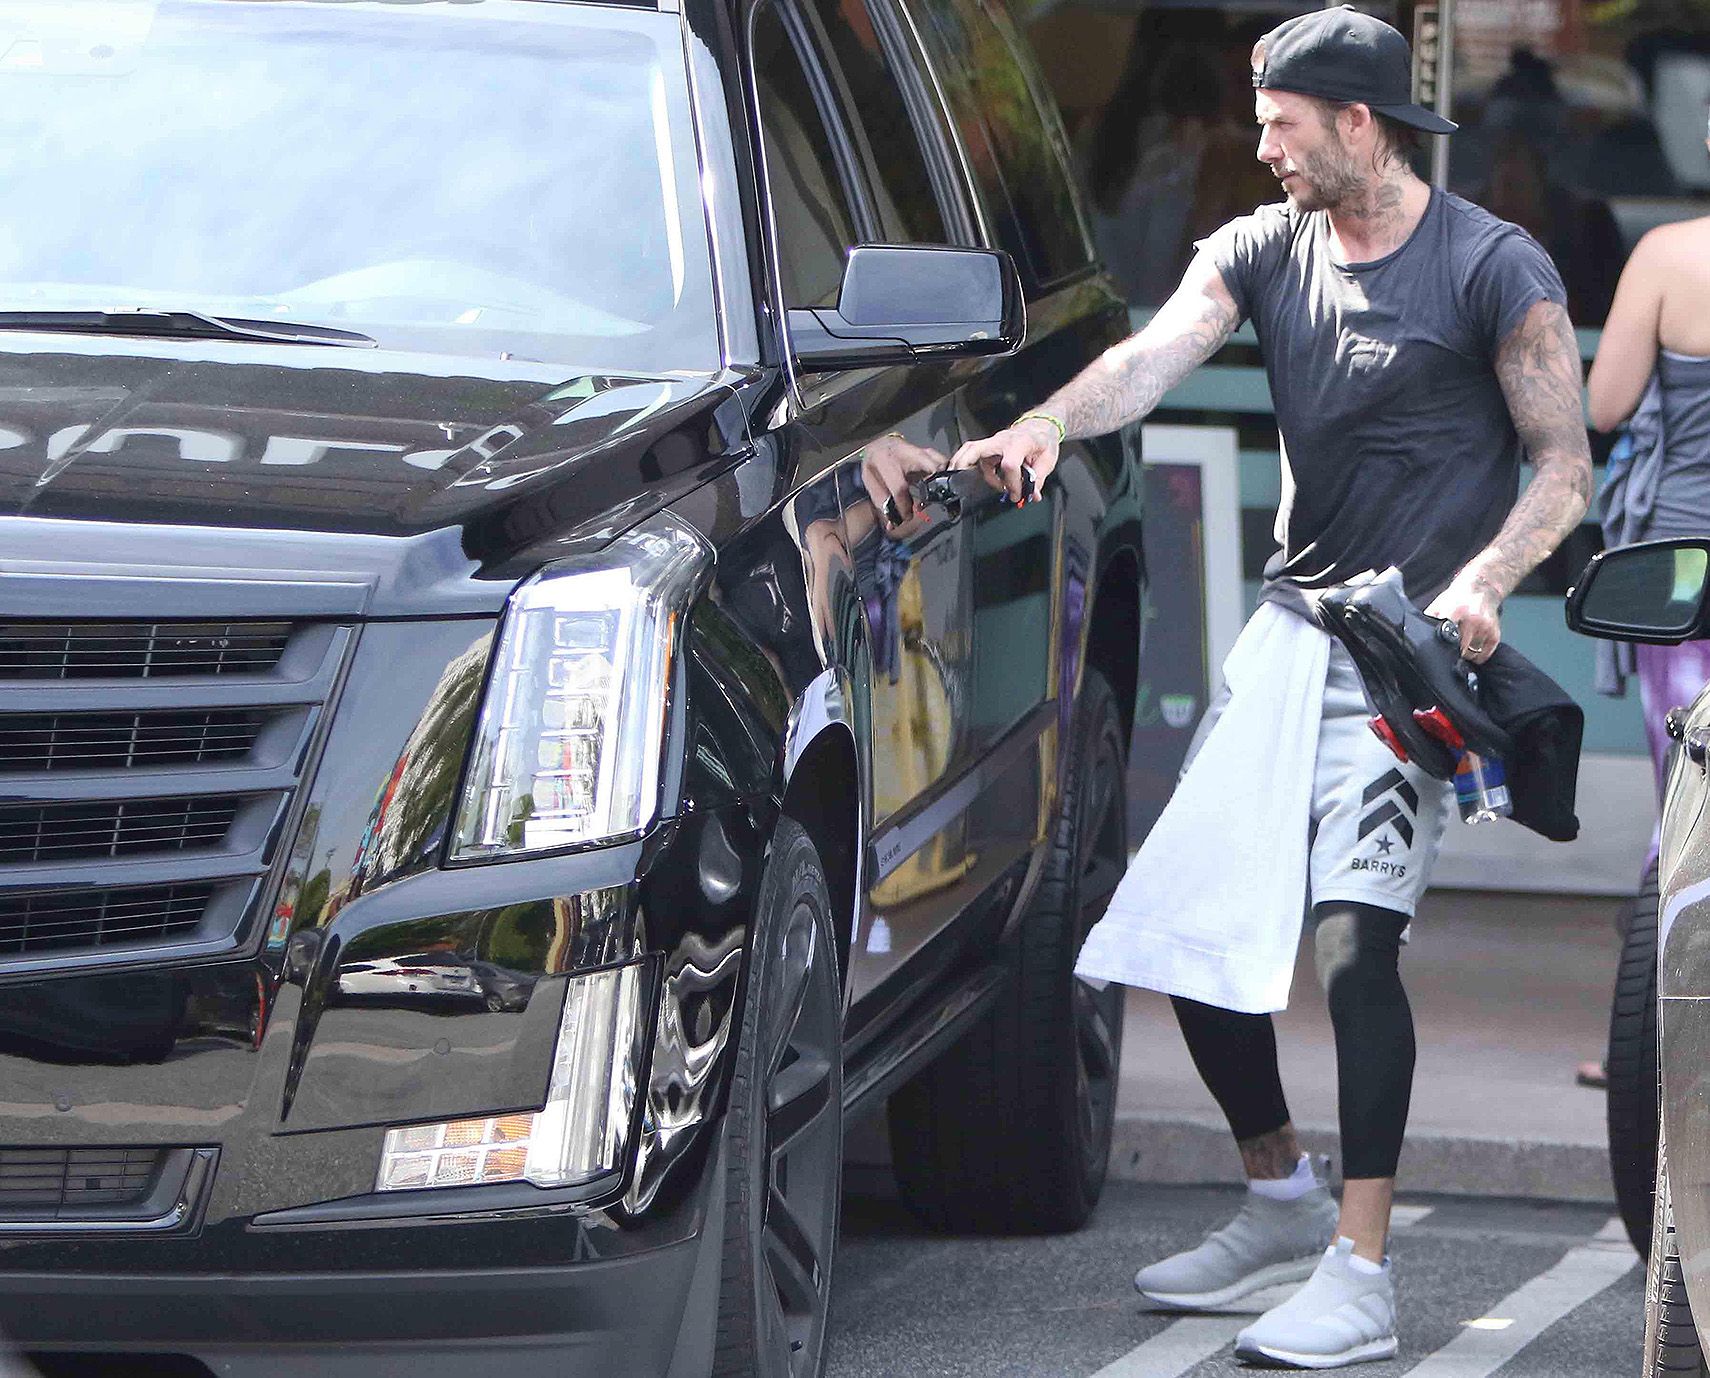 The Big, Bold & Brash Cadillac Escalade: David Beckham Has One